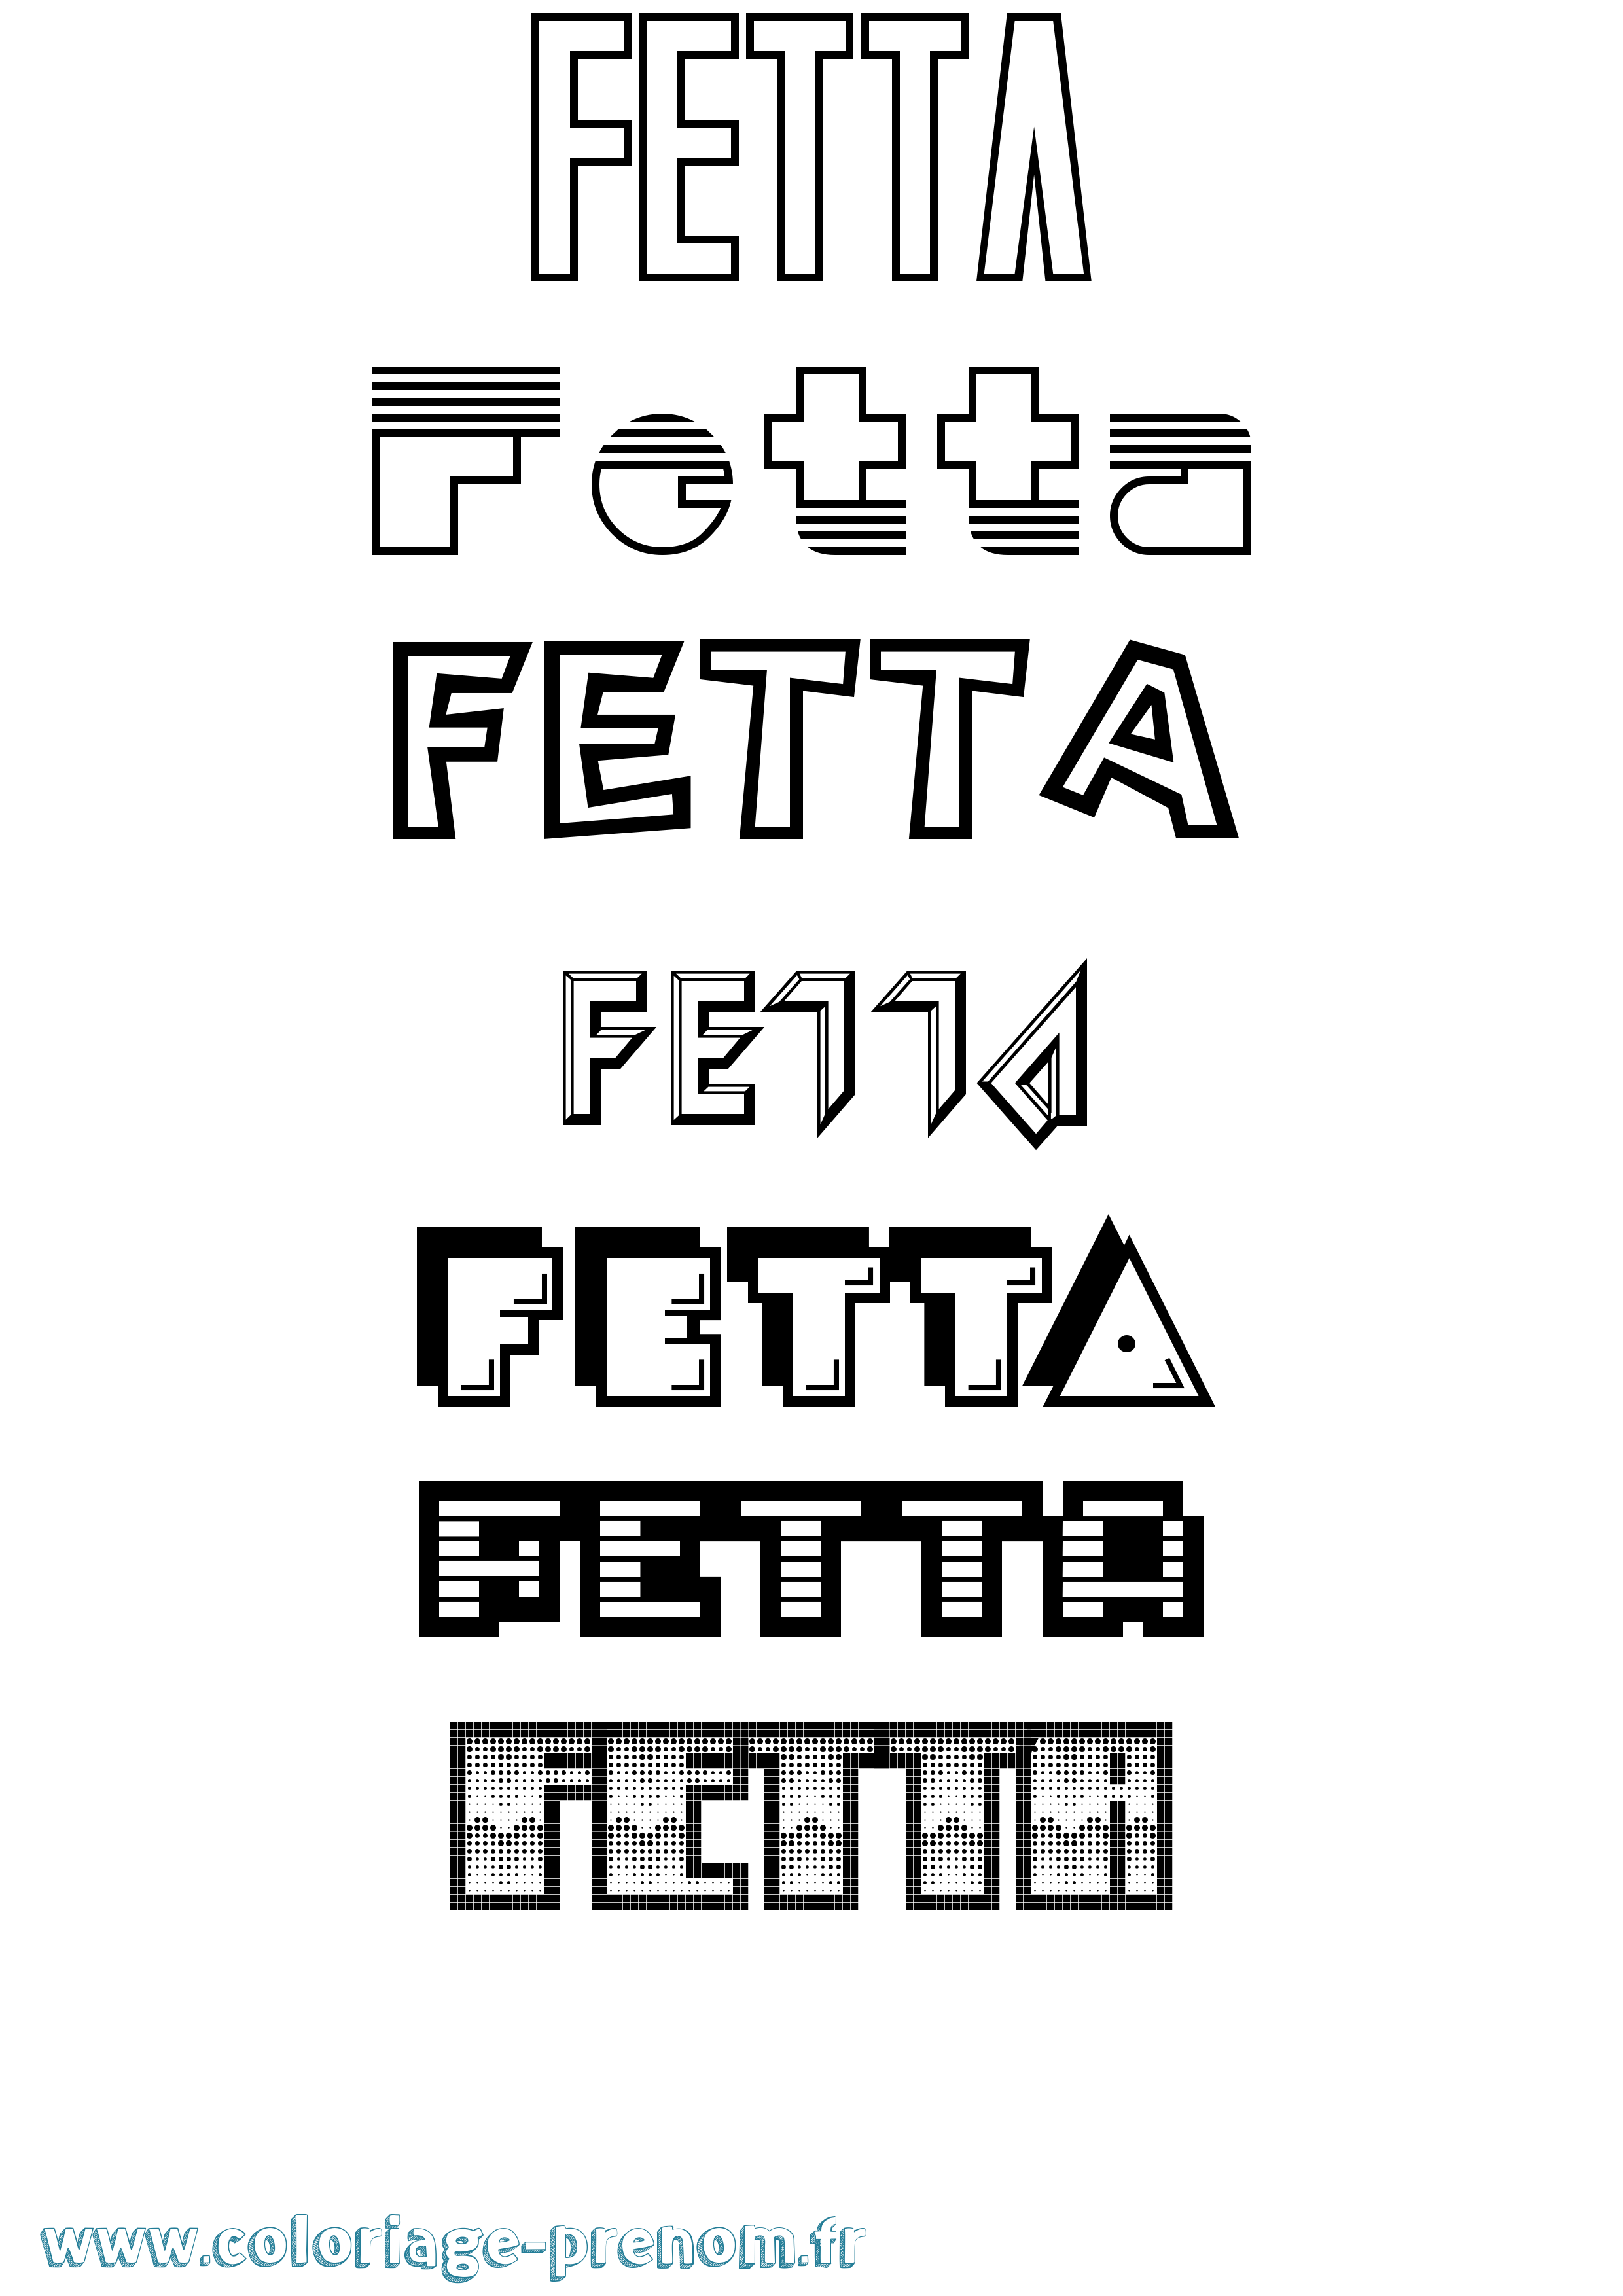 Coloriage prénom Fetta Jeux Vidéos